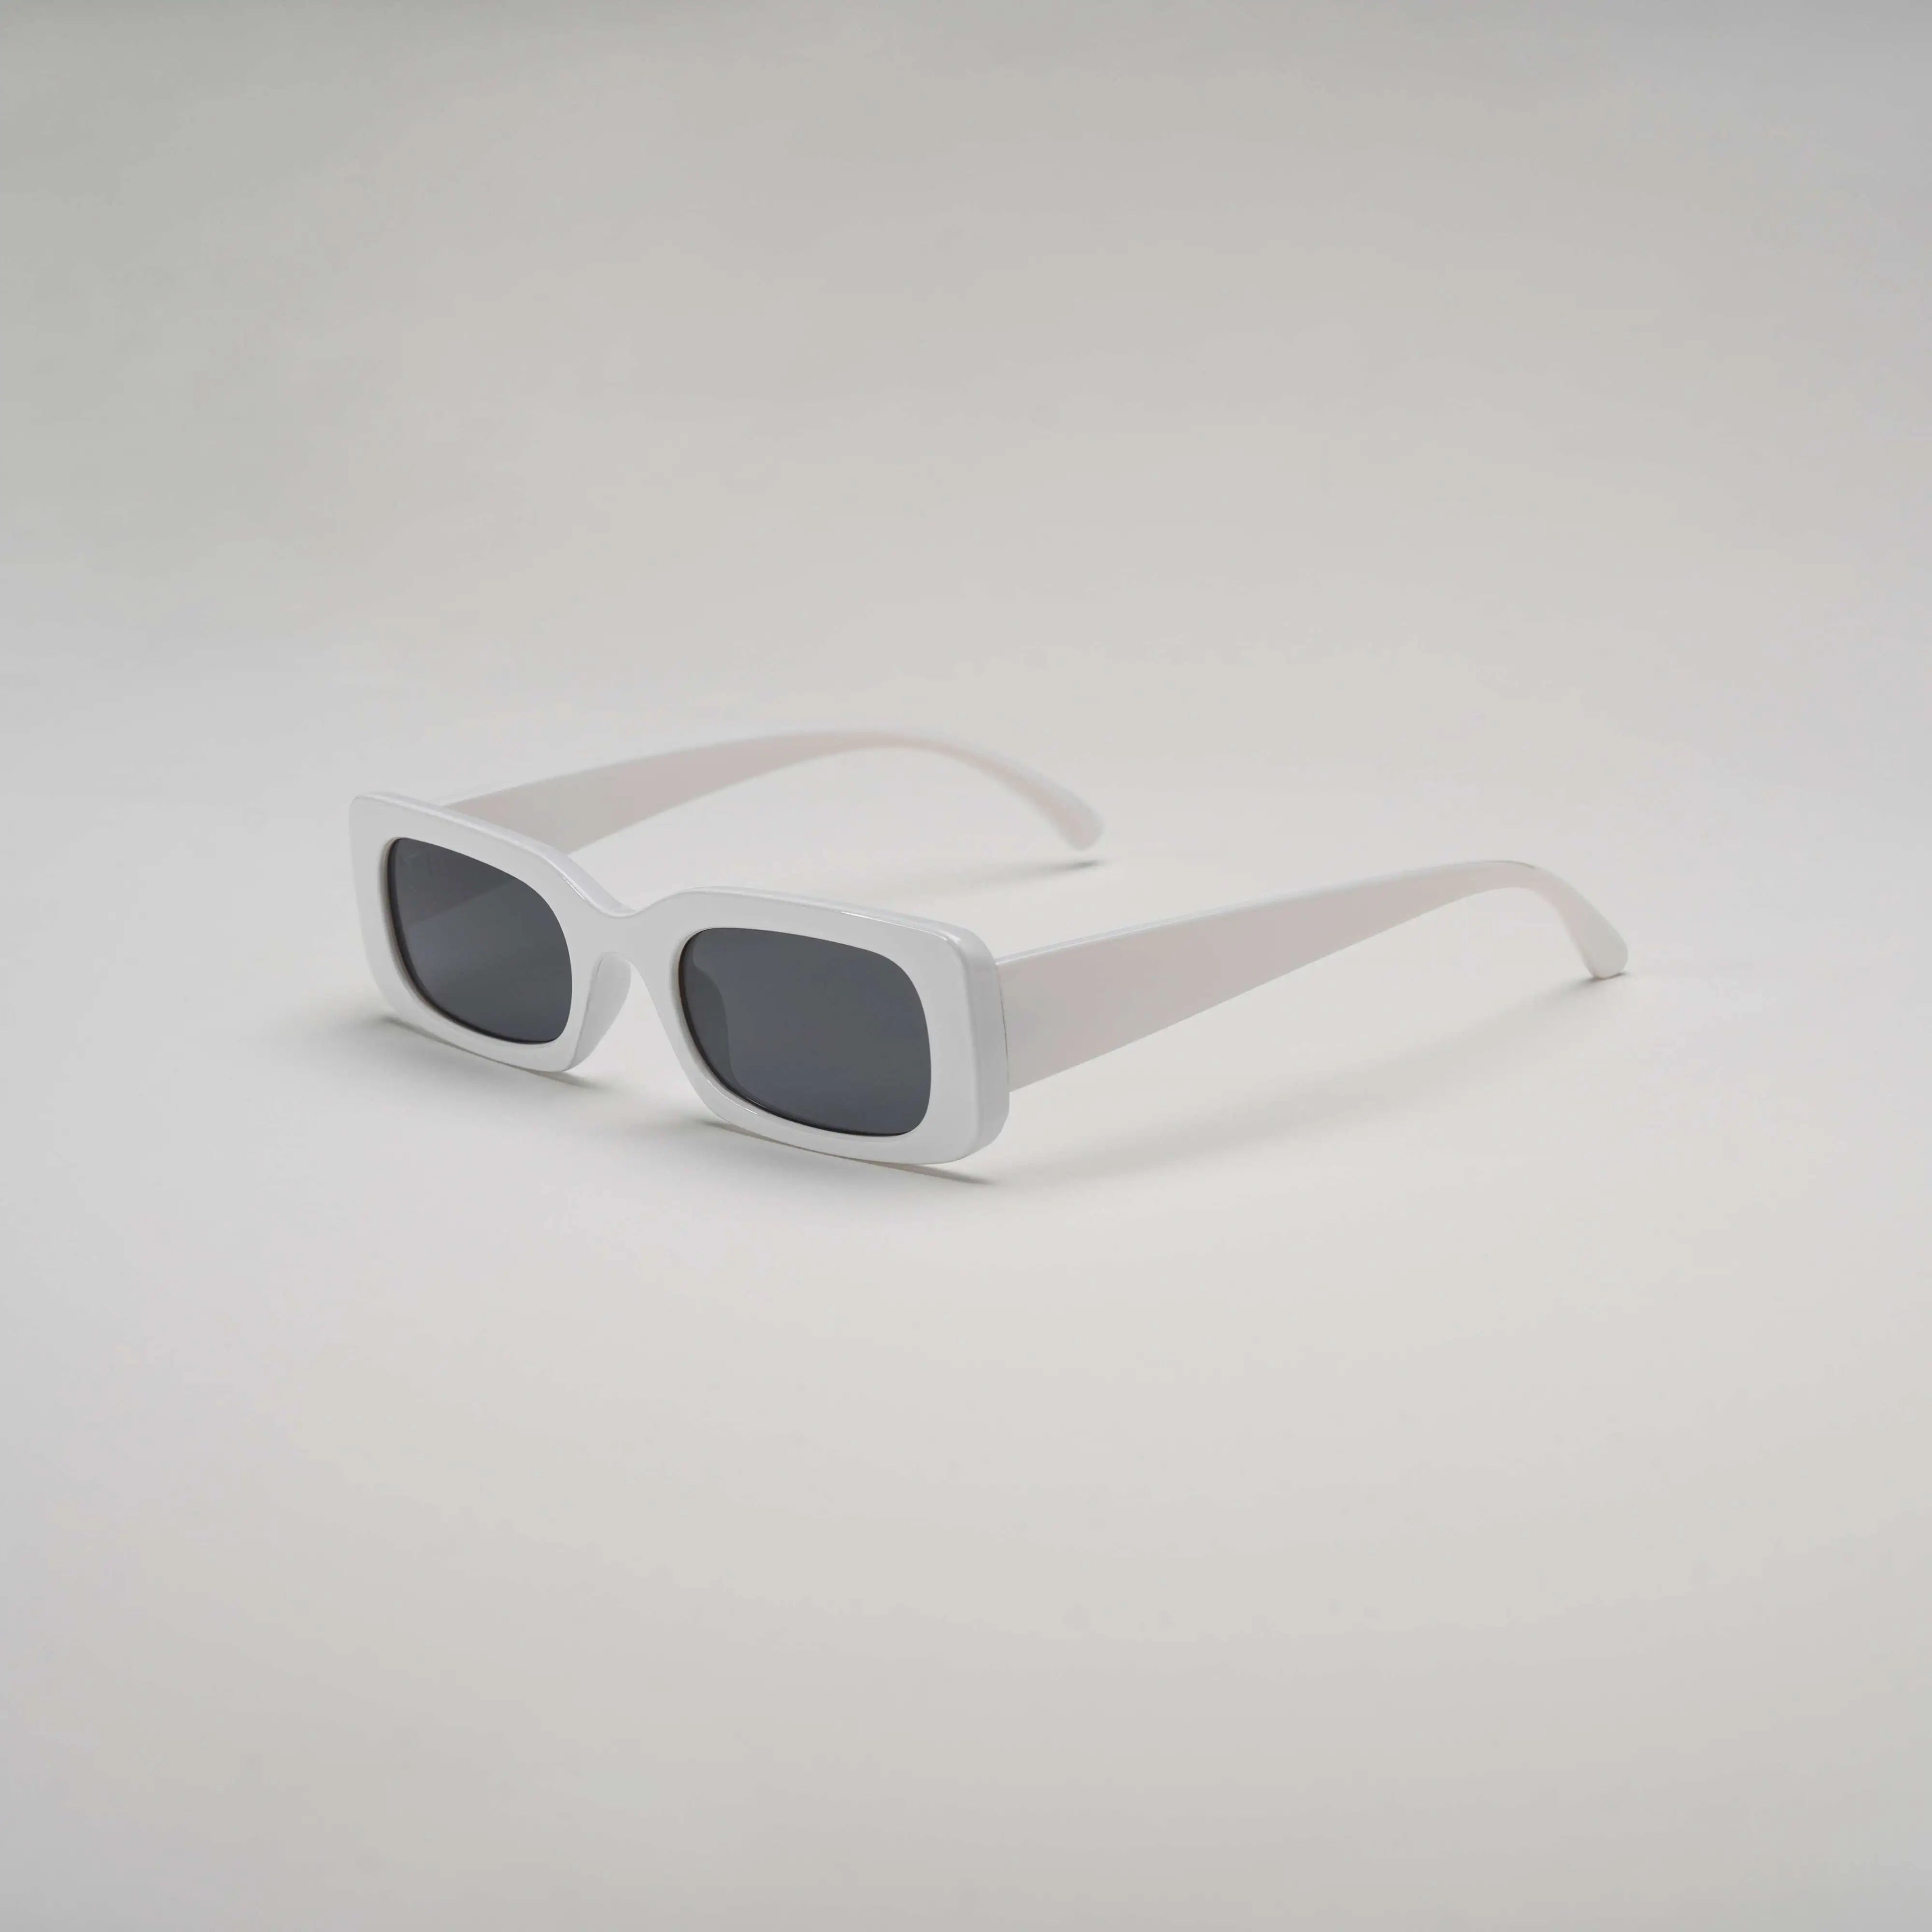 'Hot Since 82' Retro Oval Sunglasses in White